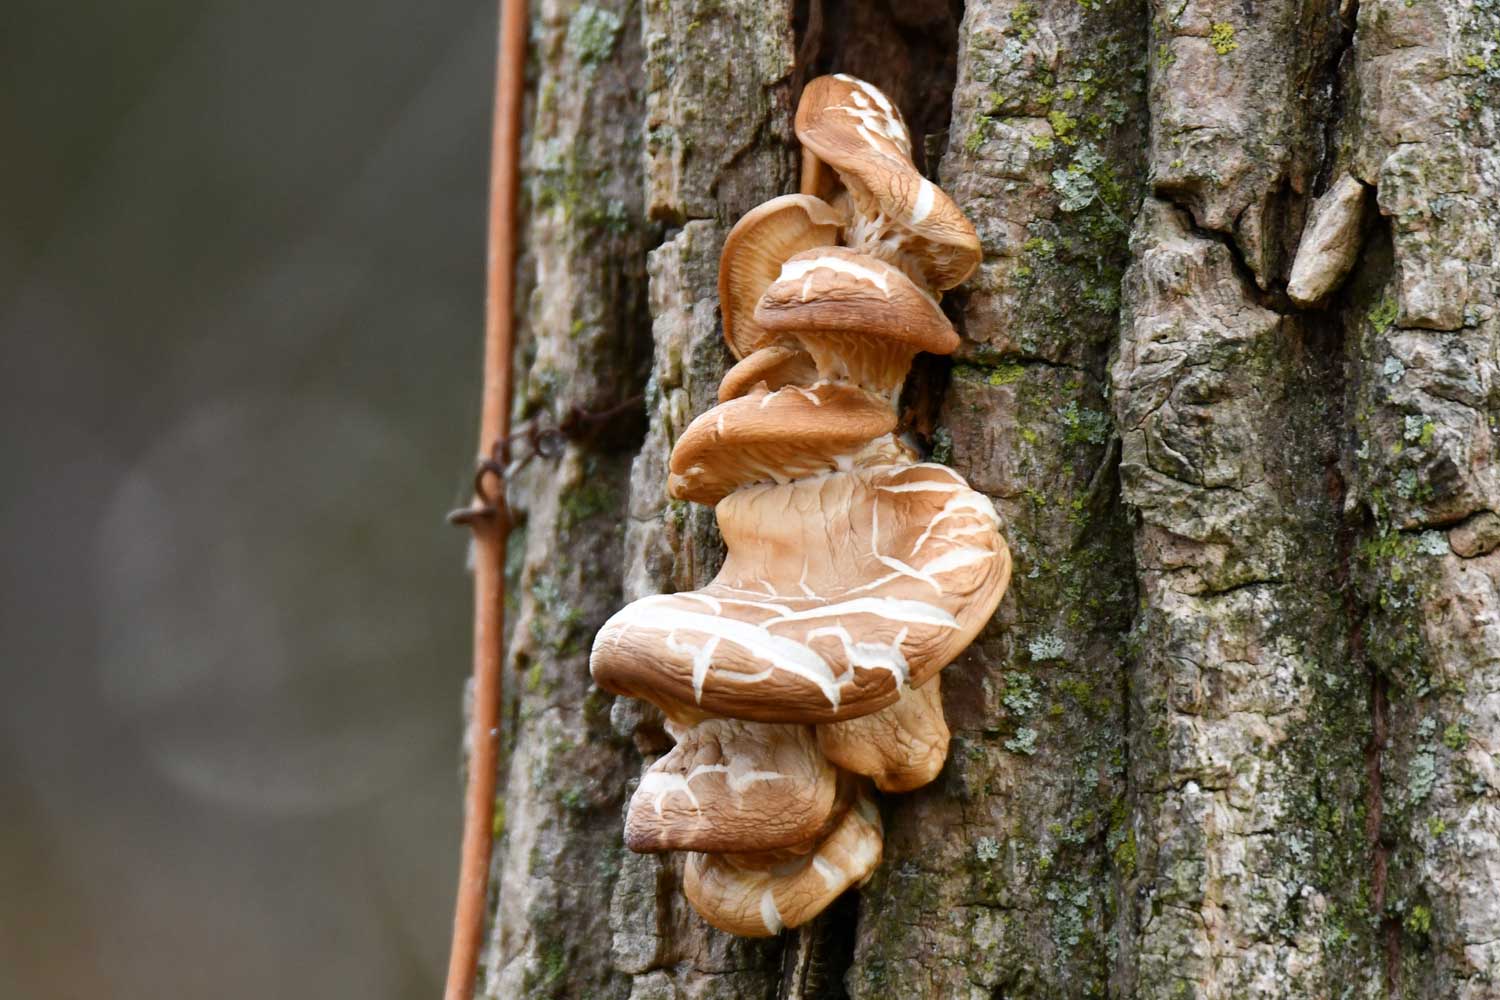 Wrinkled peach mushroom fungus on a tree.